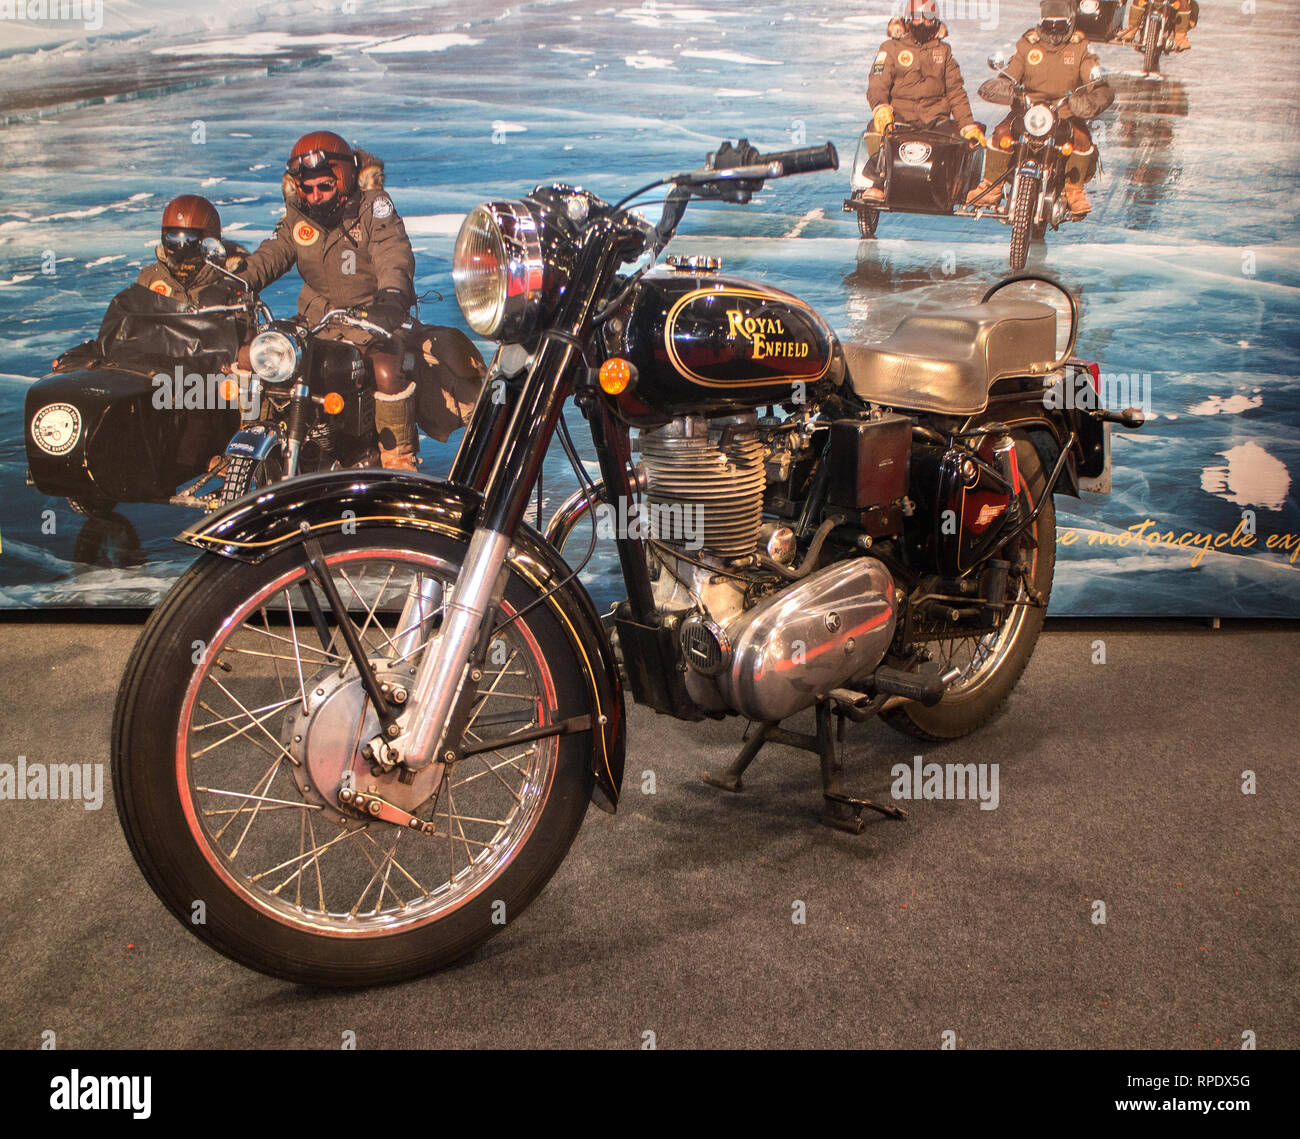 Un vintage Royal Enfield au London Motorcycle Show 2019 Banque D'Images